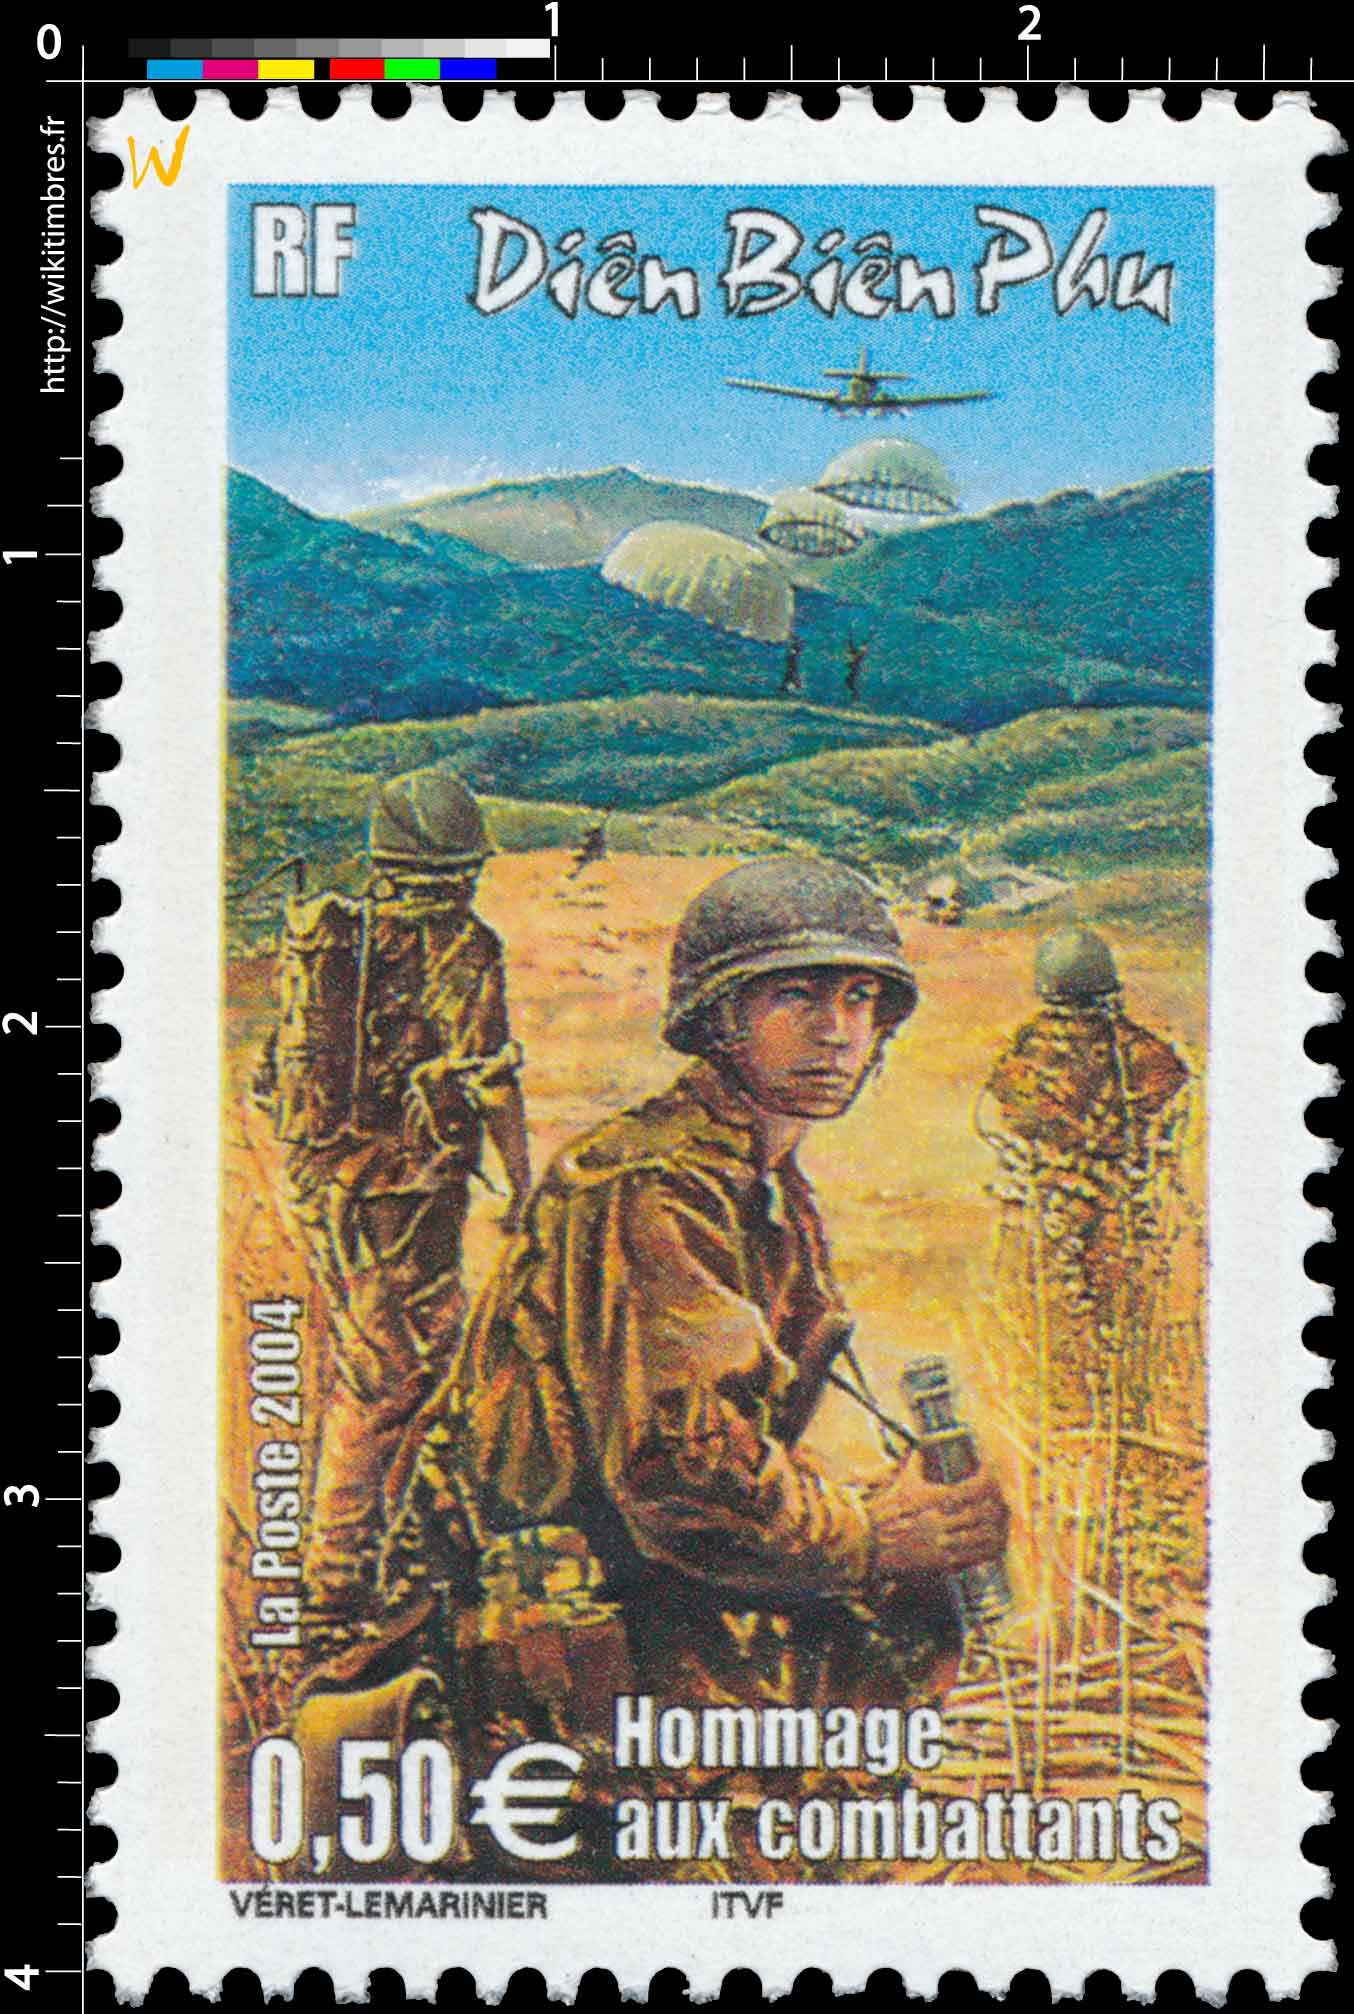 2004 Diên Biên Phu Hommage aux combattants